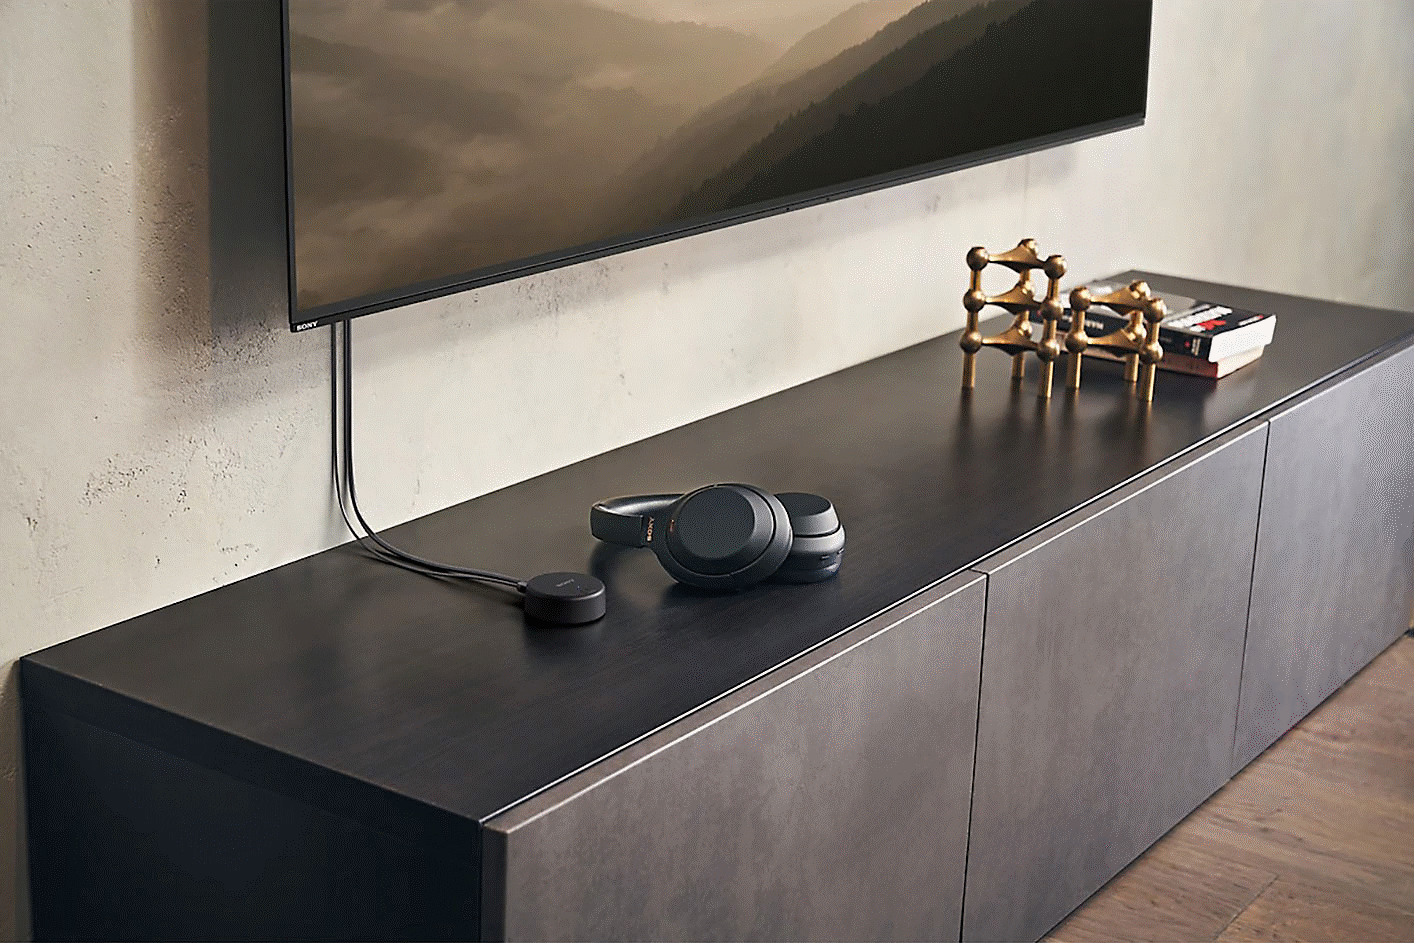 Imagen de unos audífonos sobre un televisor junto a un transmisor inalámbrico Sony WLA-NS7